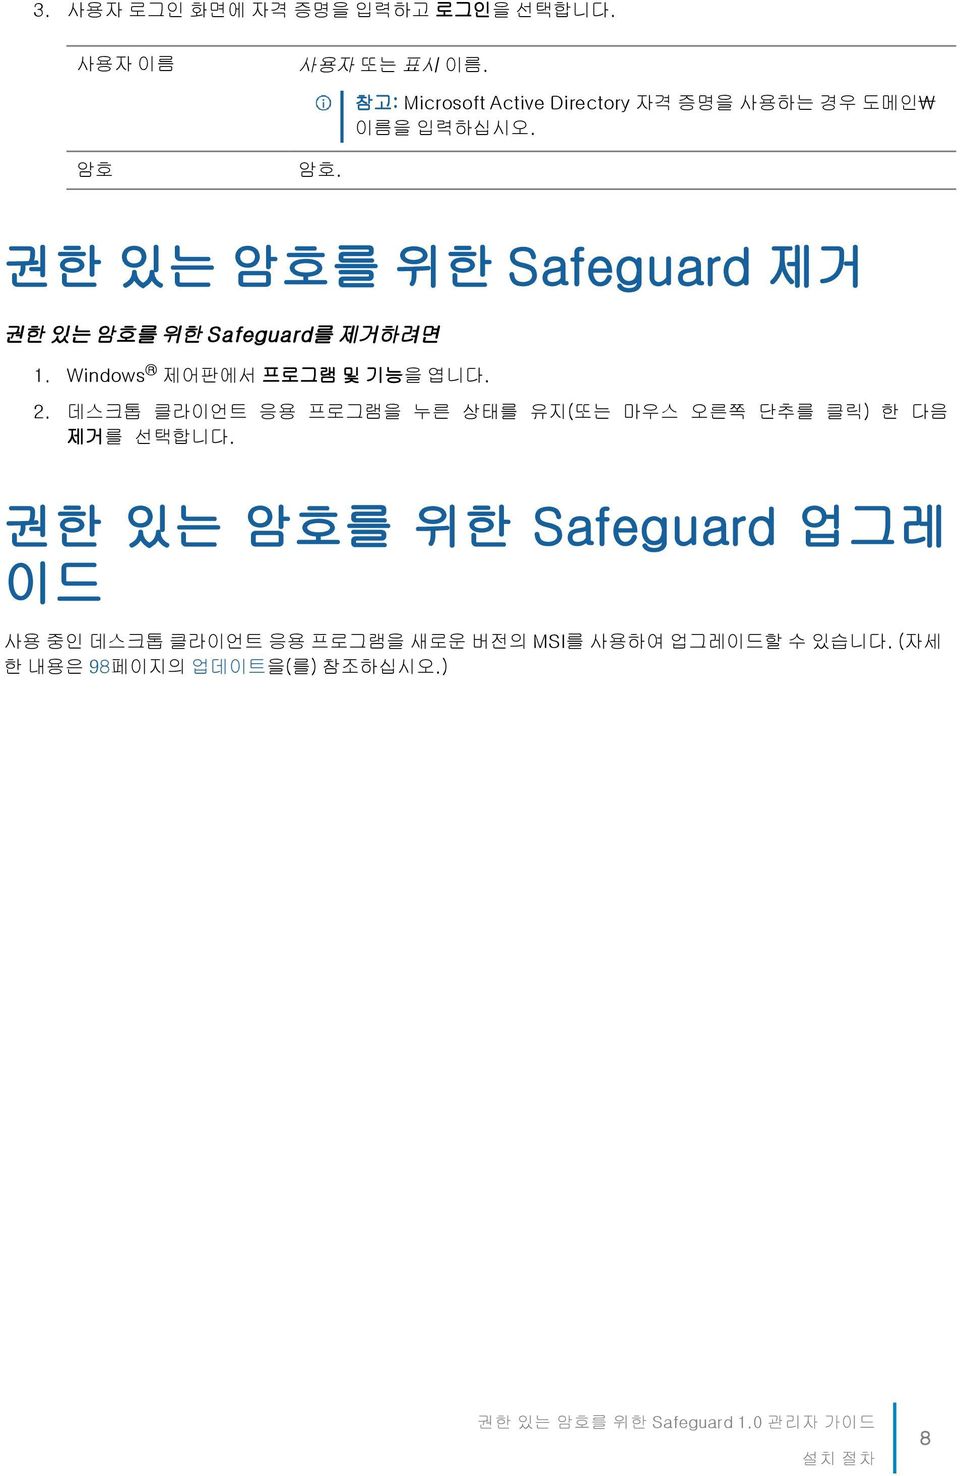 권한 있는 암호를 위한 Safeguard 제거 권한 있는 암호를 위한 Safeguard를 제거하려면 1. Windows 제어판에서 프로그램 및 기능을 엽니다. 2.